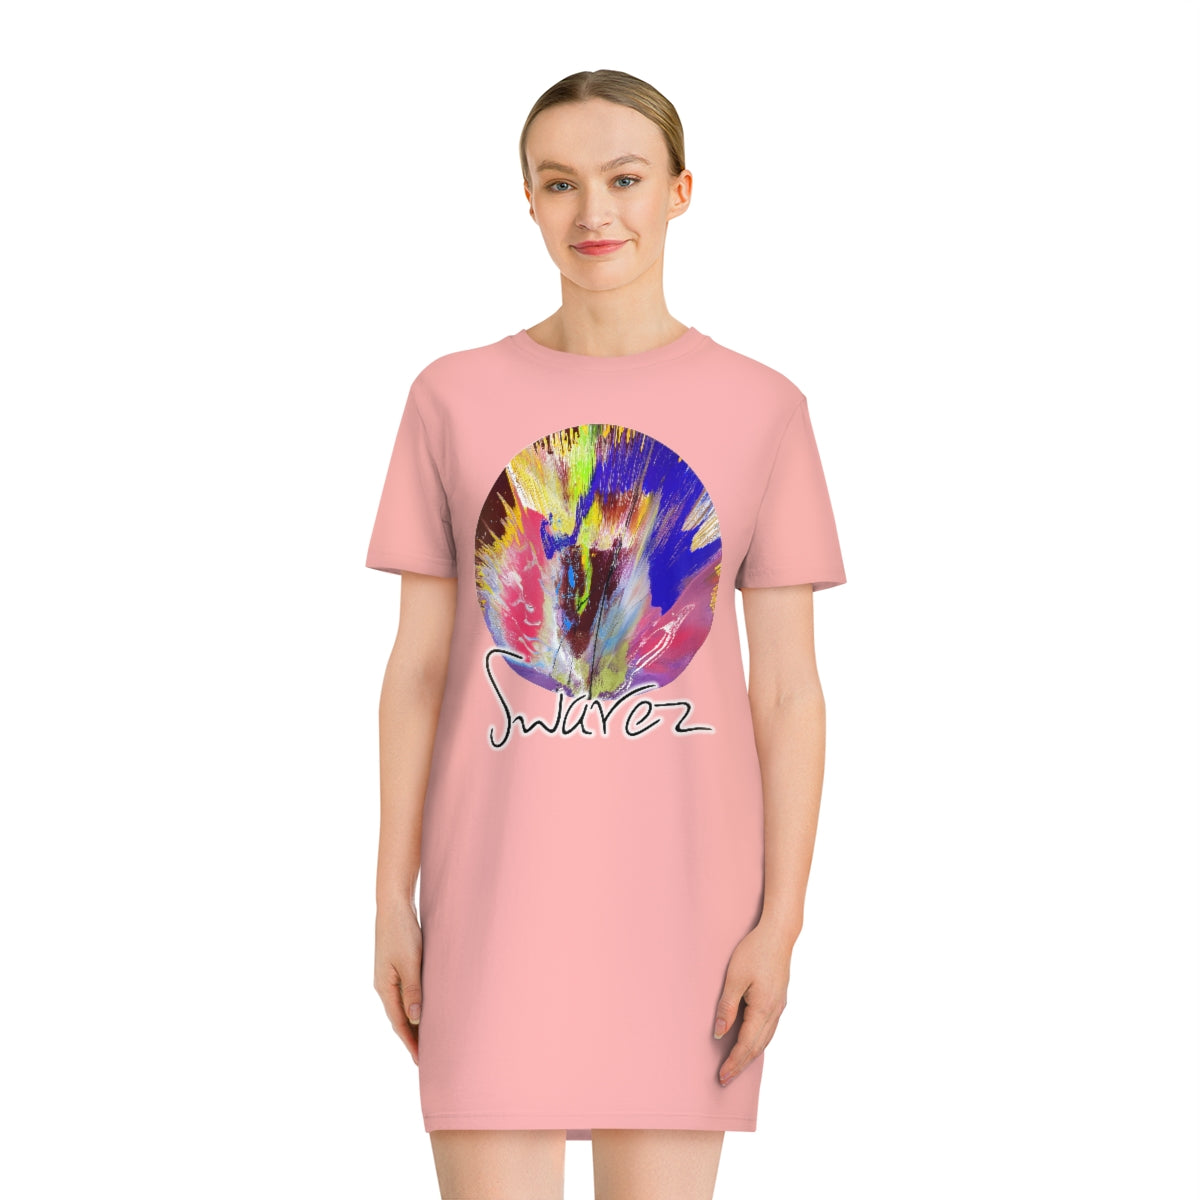 Spinner T-Shirt Dress - Circles design